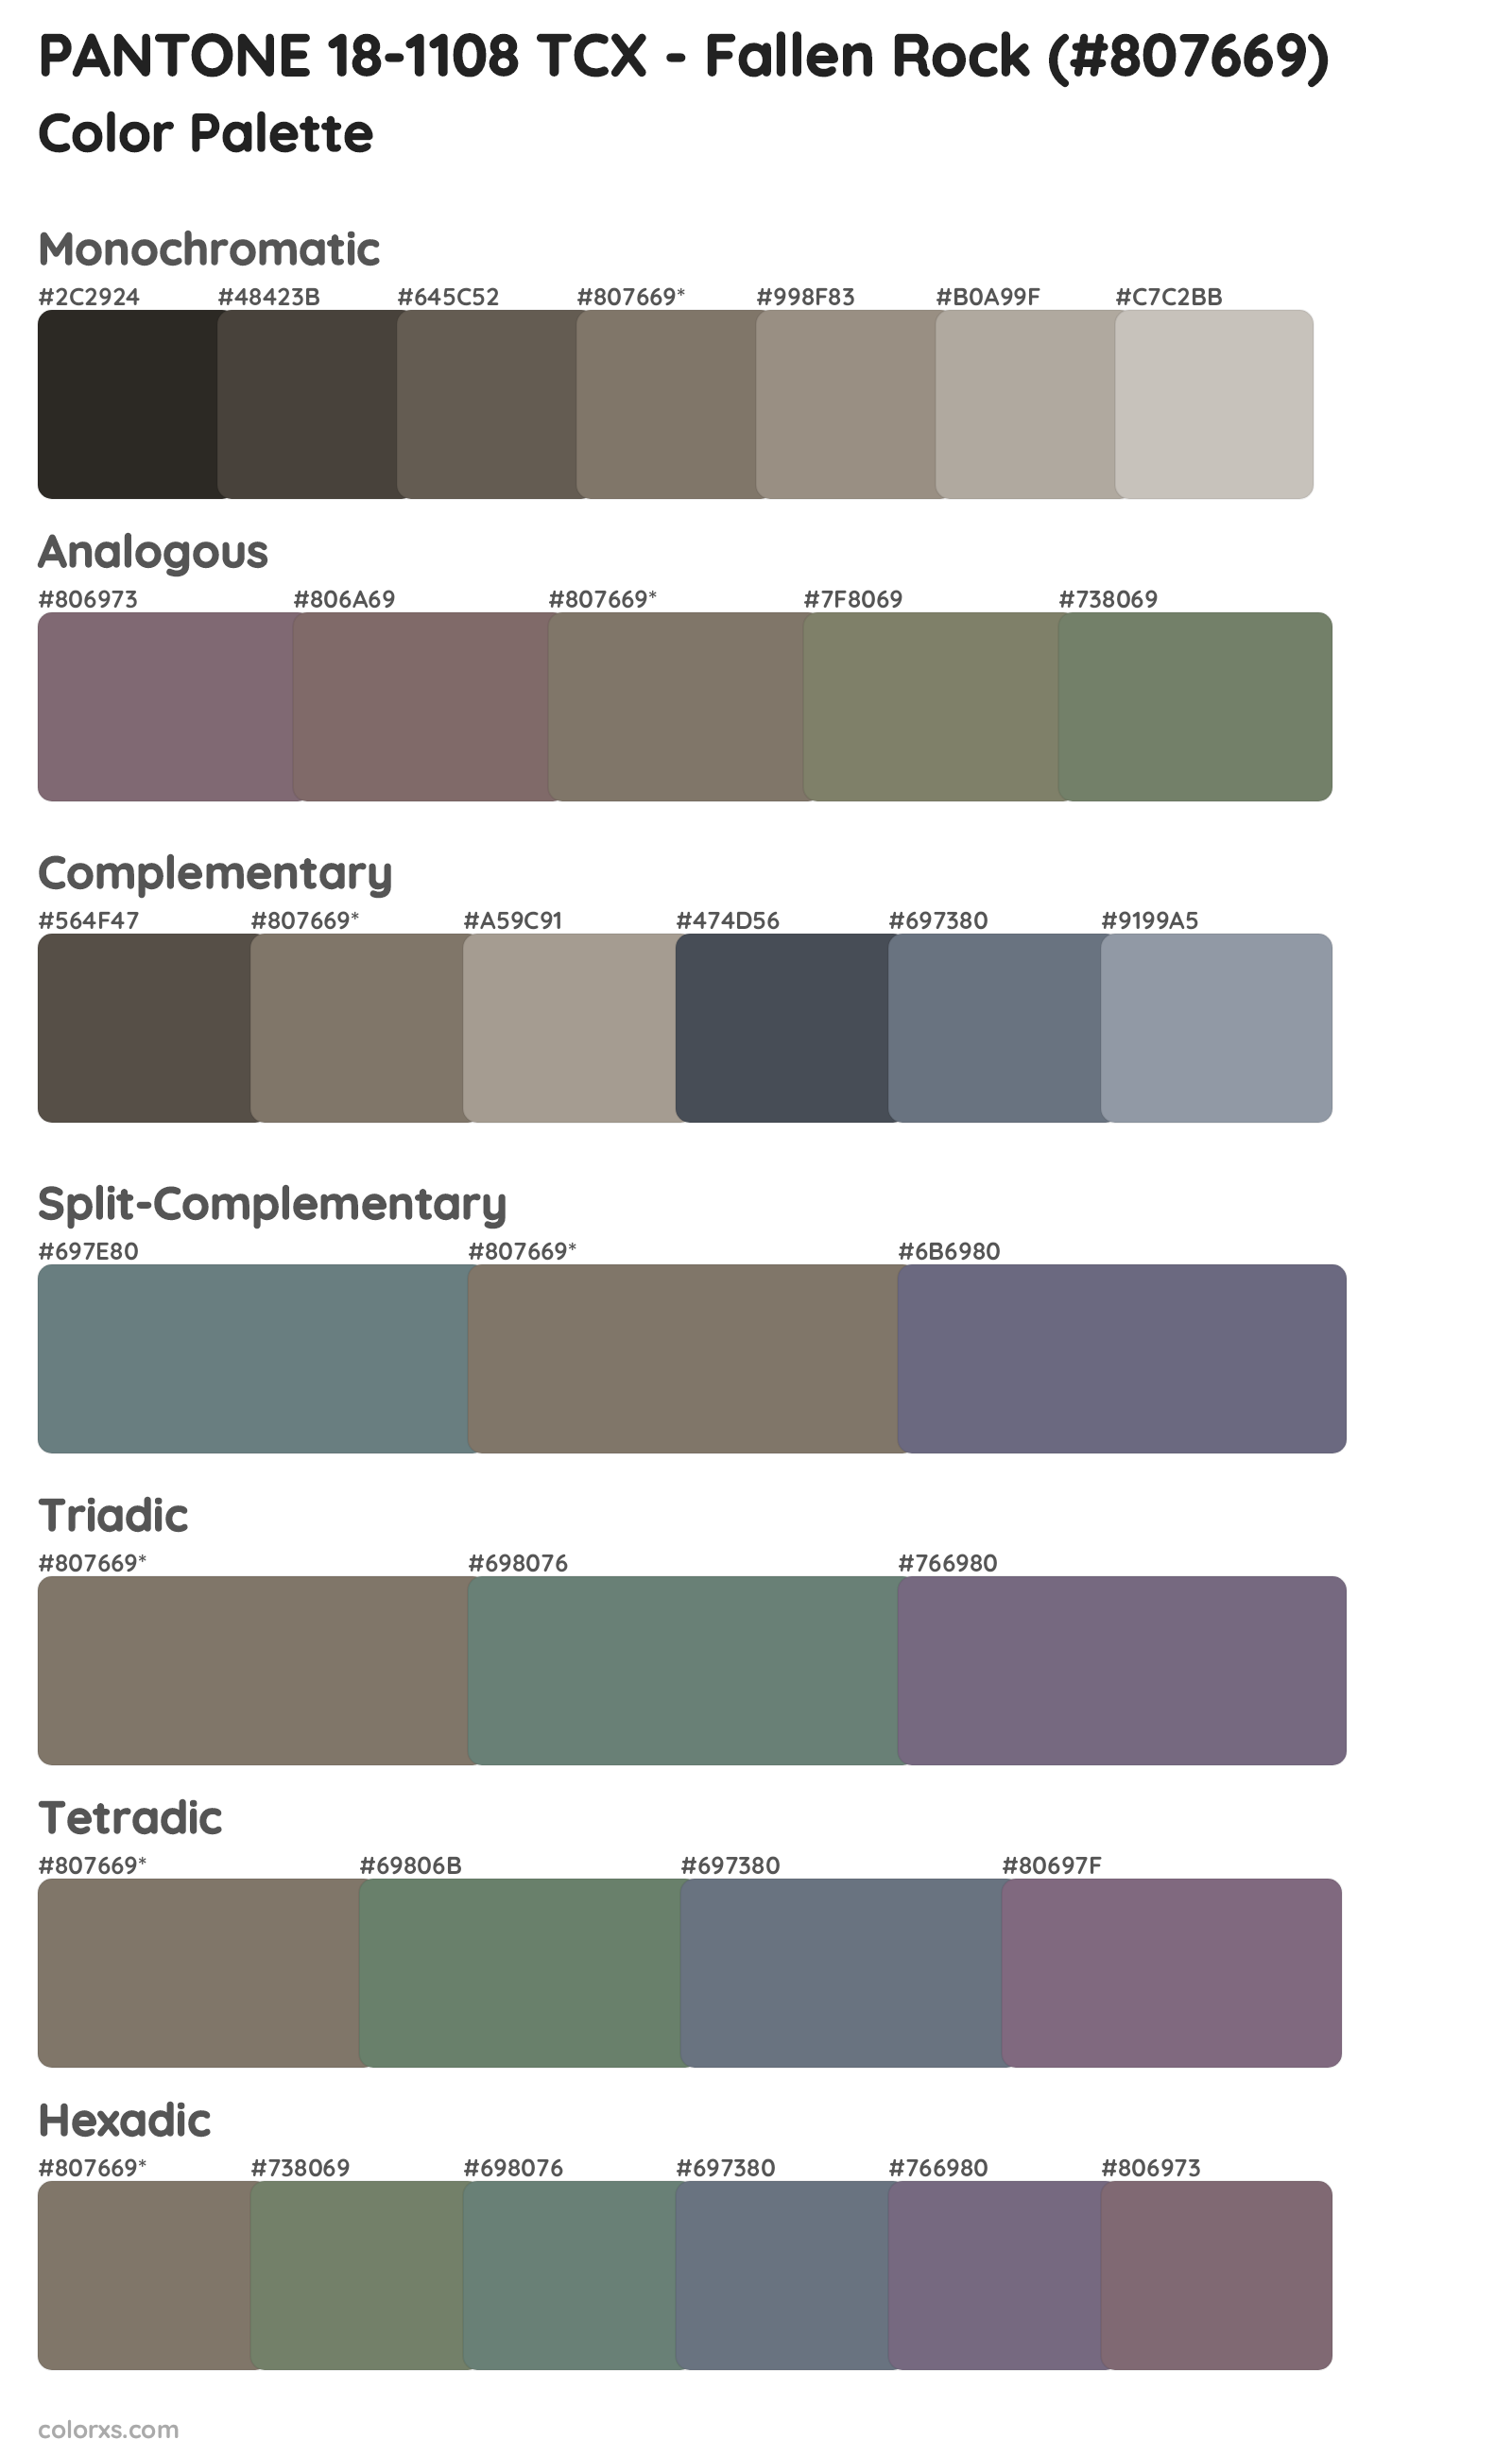 PANTONE 18-1108 TCX - Fallen Rock Color Scheme Palettes